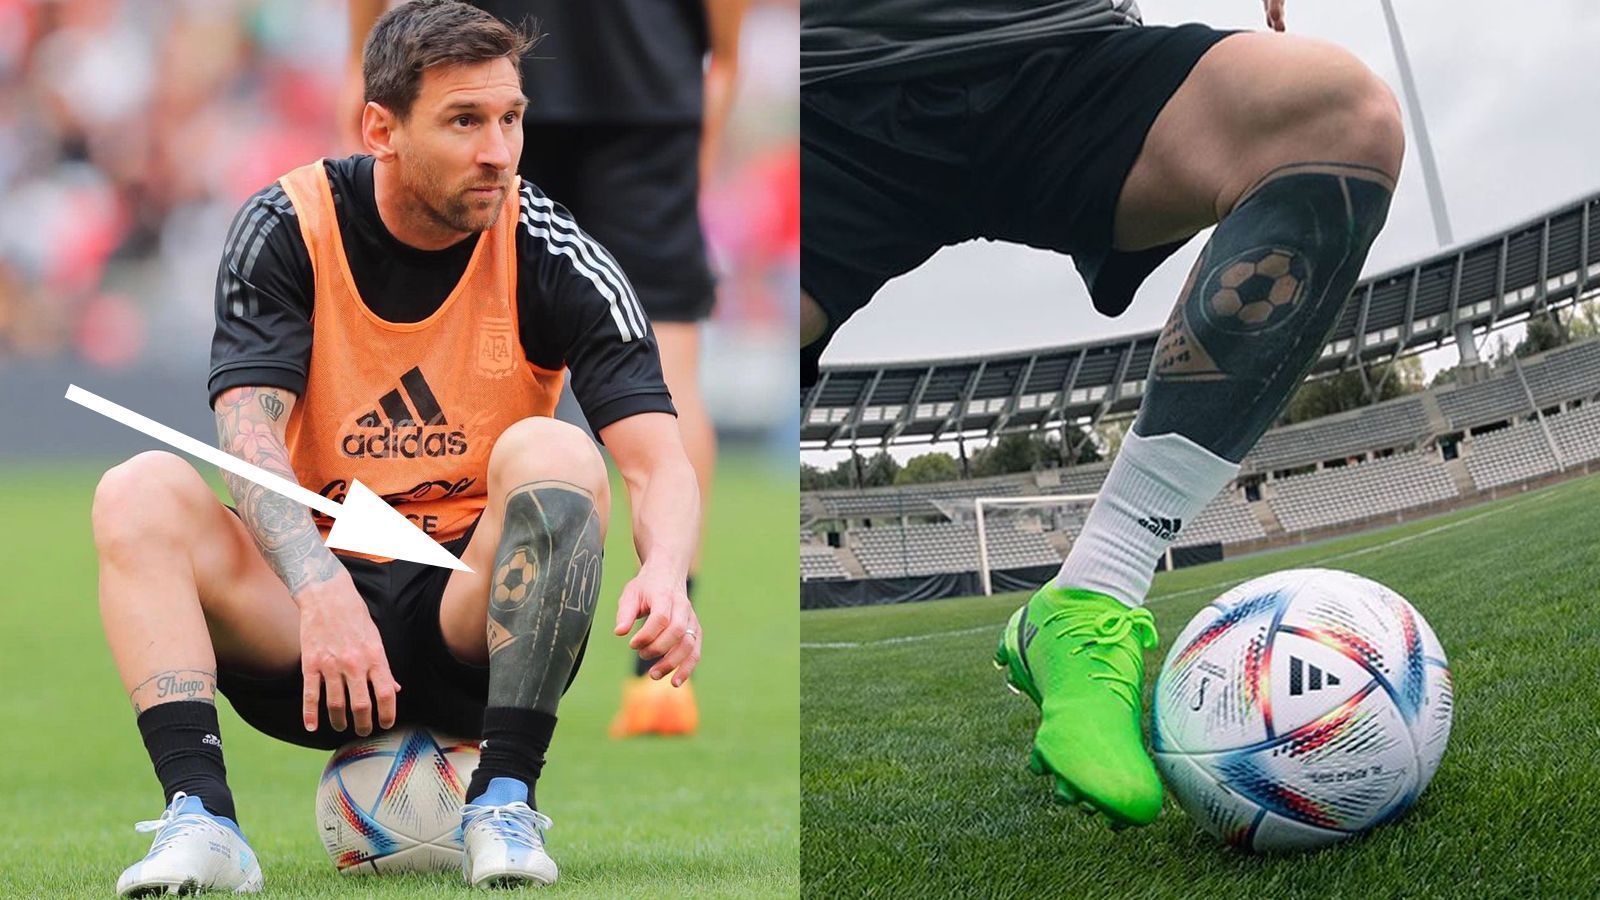 
                <strong>Tattoos am linken Bein</strong><br>
                Die Tätowierungen auf seinem linken Fuß hat Messi größtenteils verdecken lassen. Früher war darauf ein Dolch mit Flügeln zu sehen. Nachdem Messi dafür in den sozialen Netzwerken aber kritisiert wurde, ließ er das Tattoo "übermalen". Übrig sind heute nur noch ein Fußball, der für seine größte Leidenschaft steht sowie die Nummer "10", seine Rückennummer, mit der er sich sowohl zur Vereinsikone als auch zu einer argentinischen Legende machte.
              